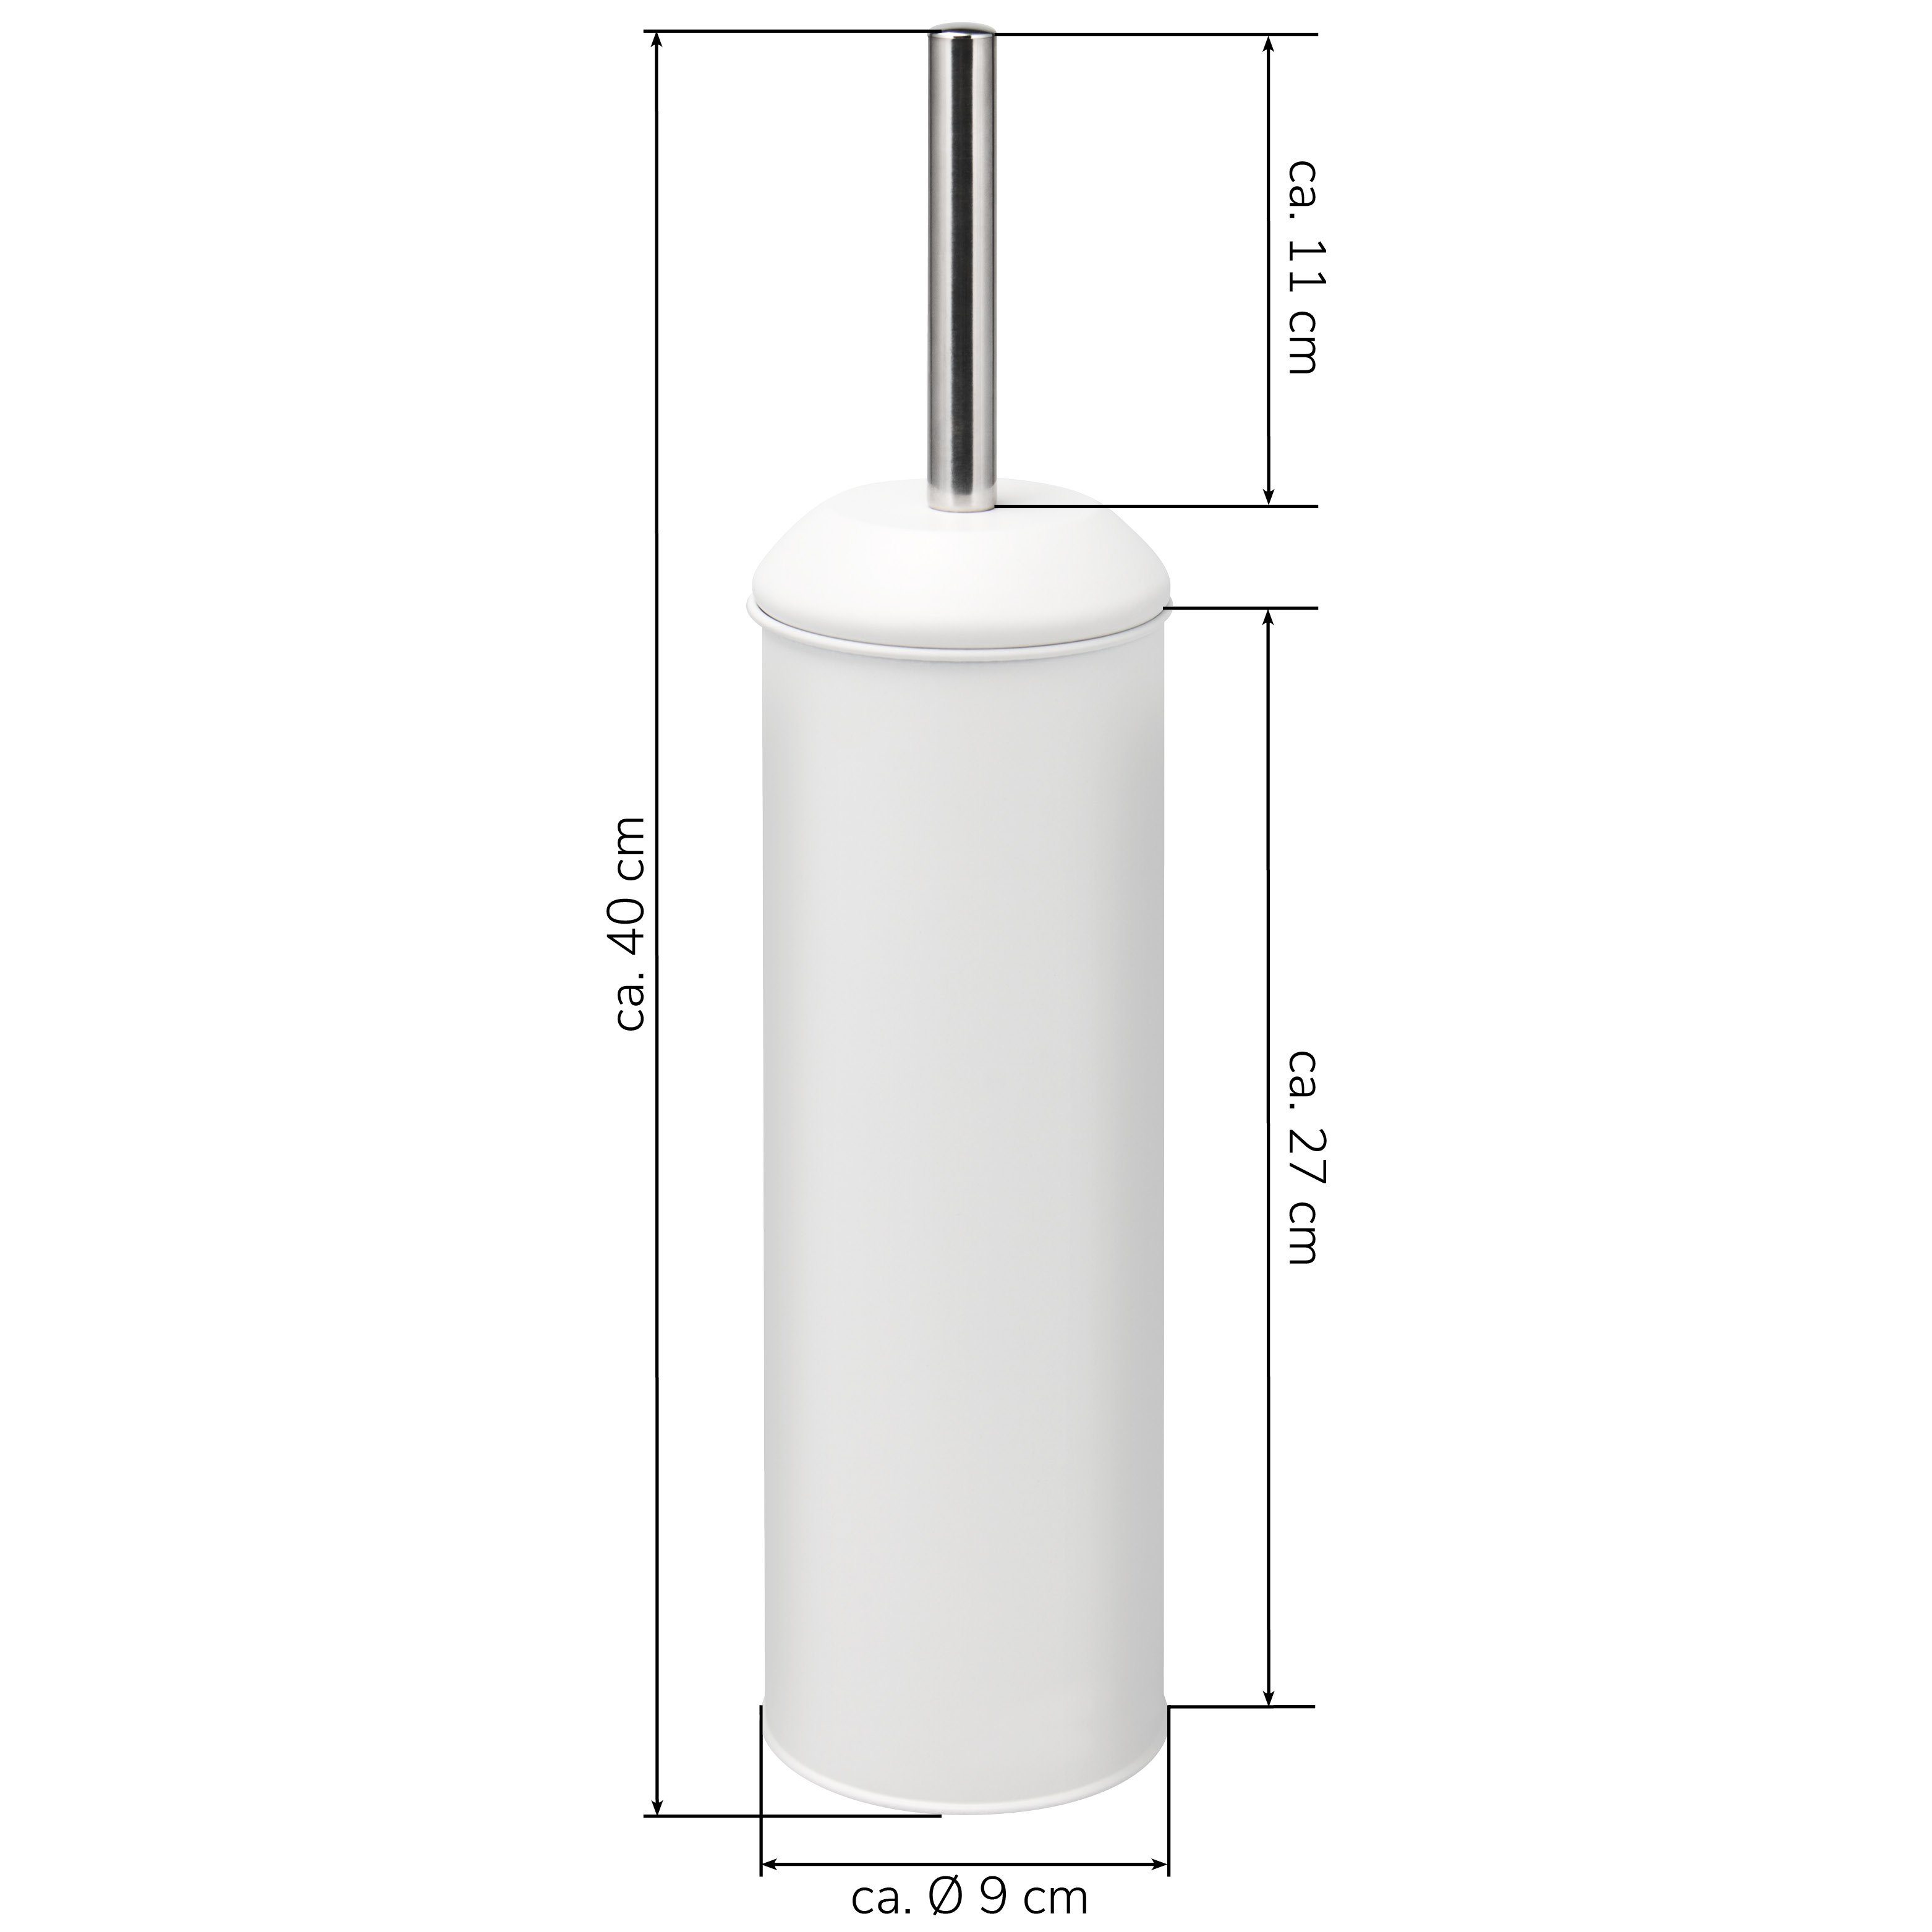 bremermann WC-Reinigungsbürste RIALTO Edelstahl Set) Metall Bürste RIALTO, weiß, Standbürste Badserie WC (kein